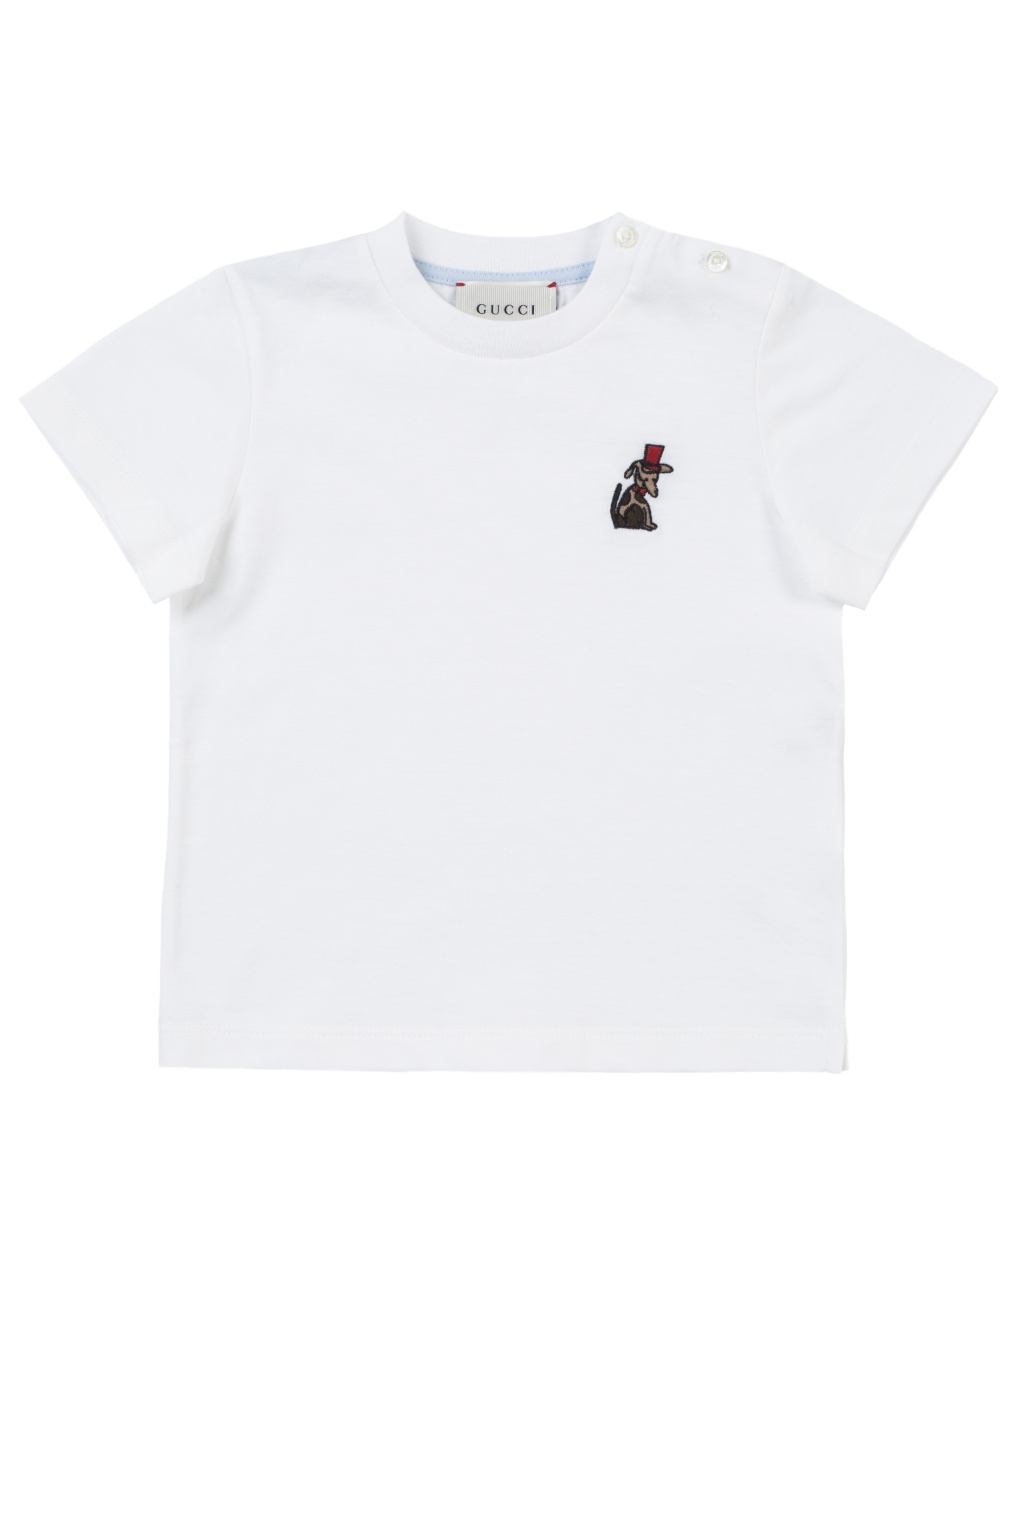 Gucci Dog Shirt -  Canada